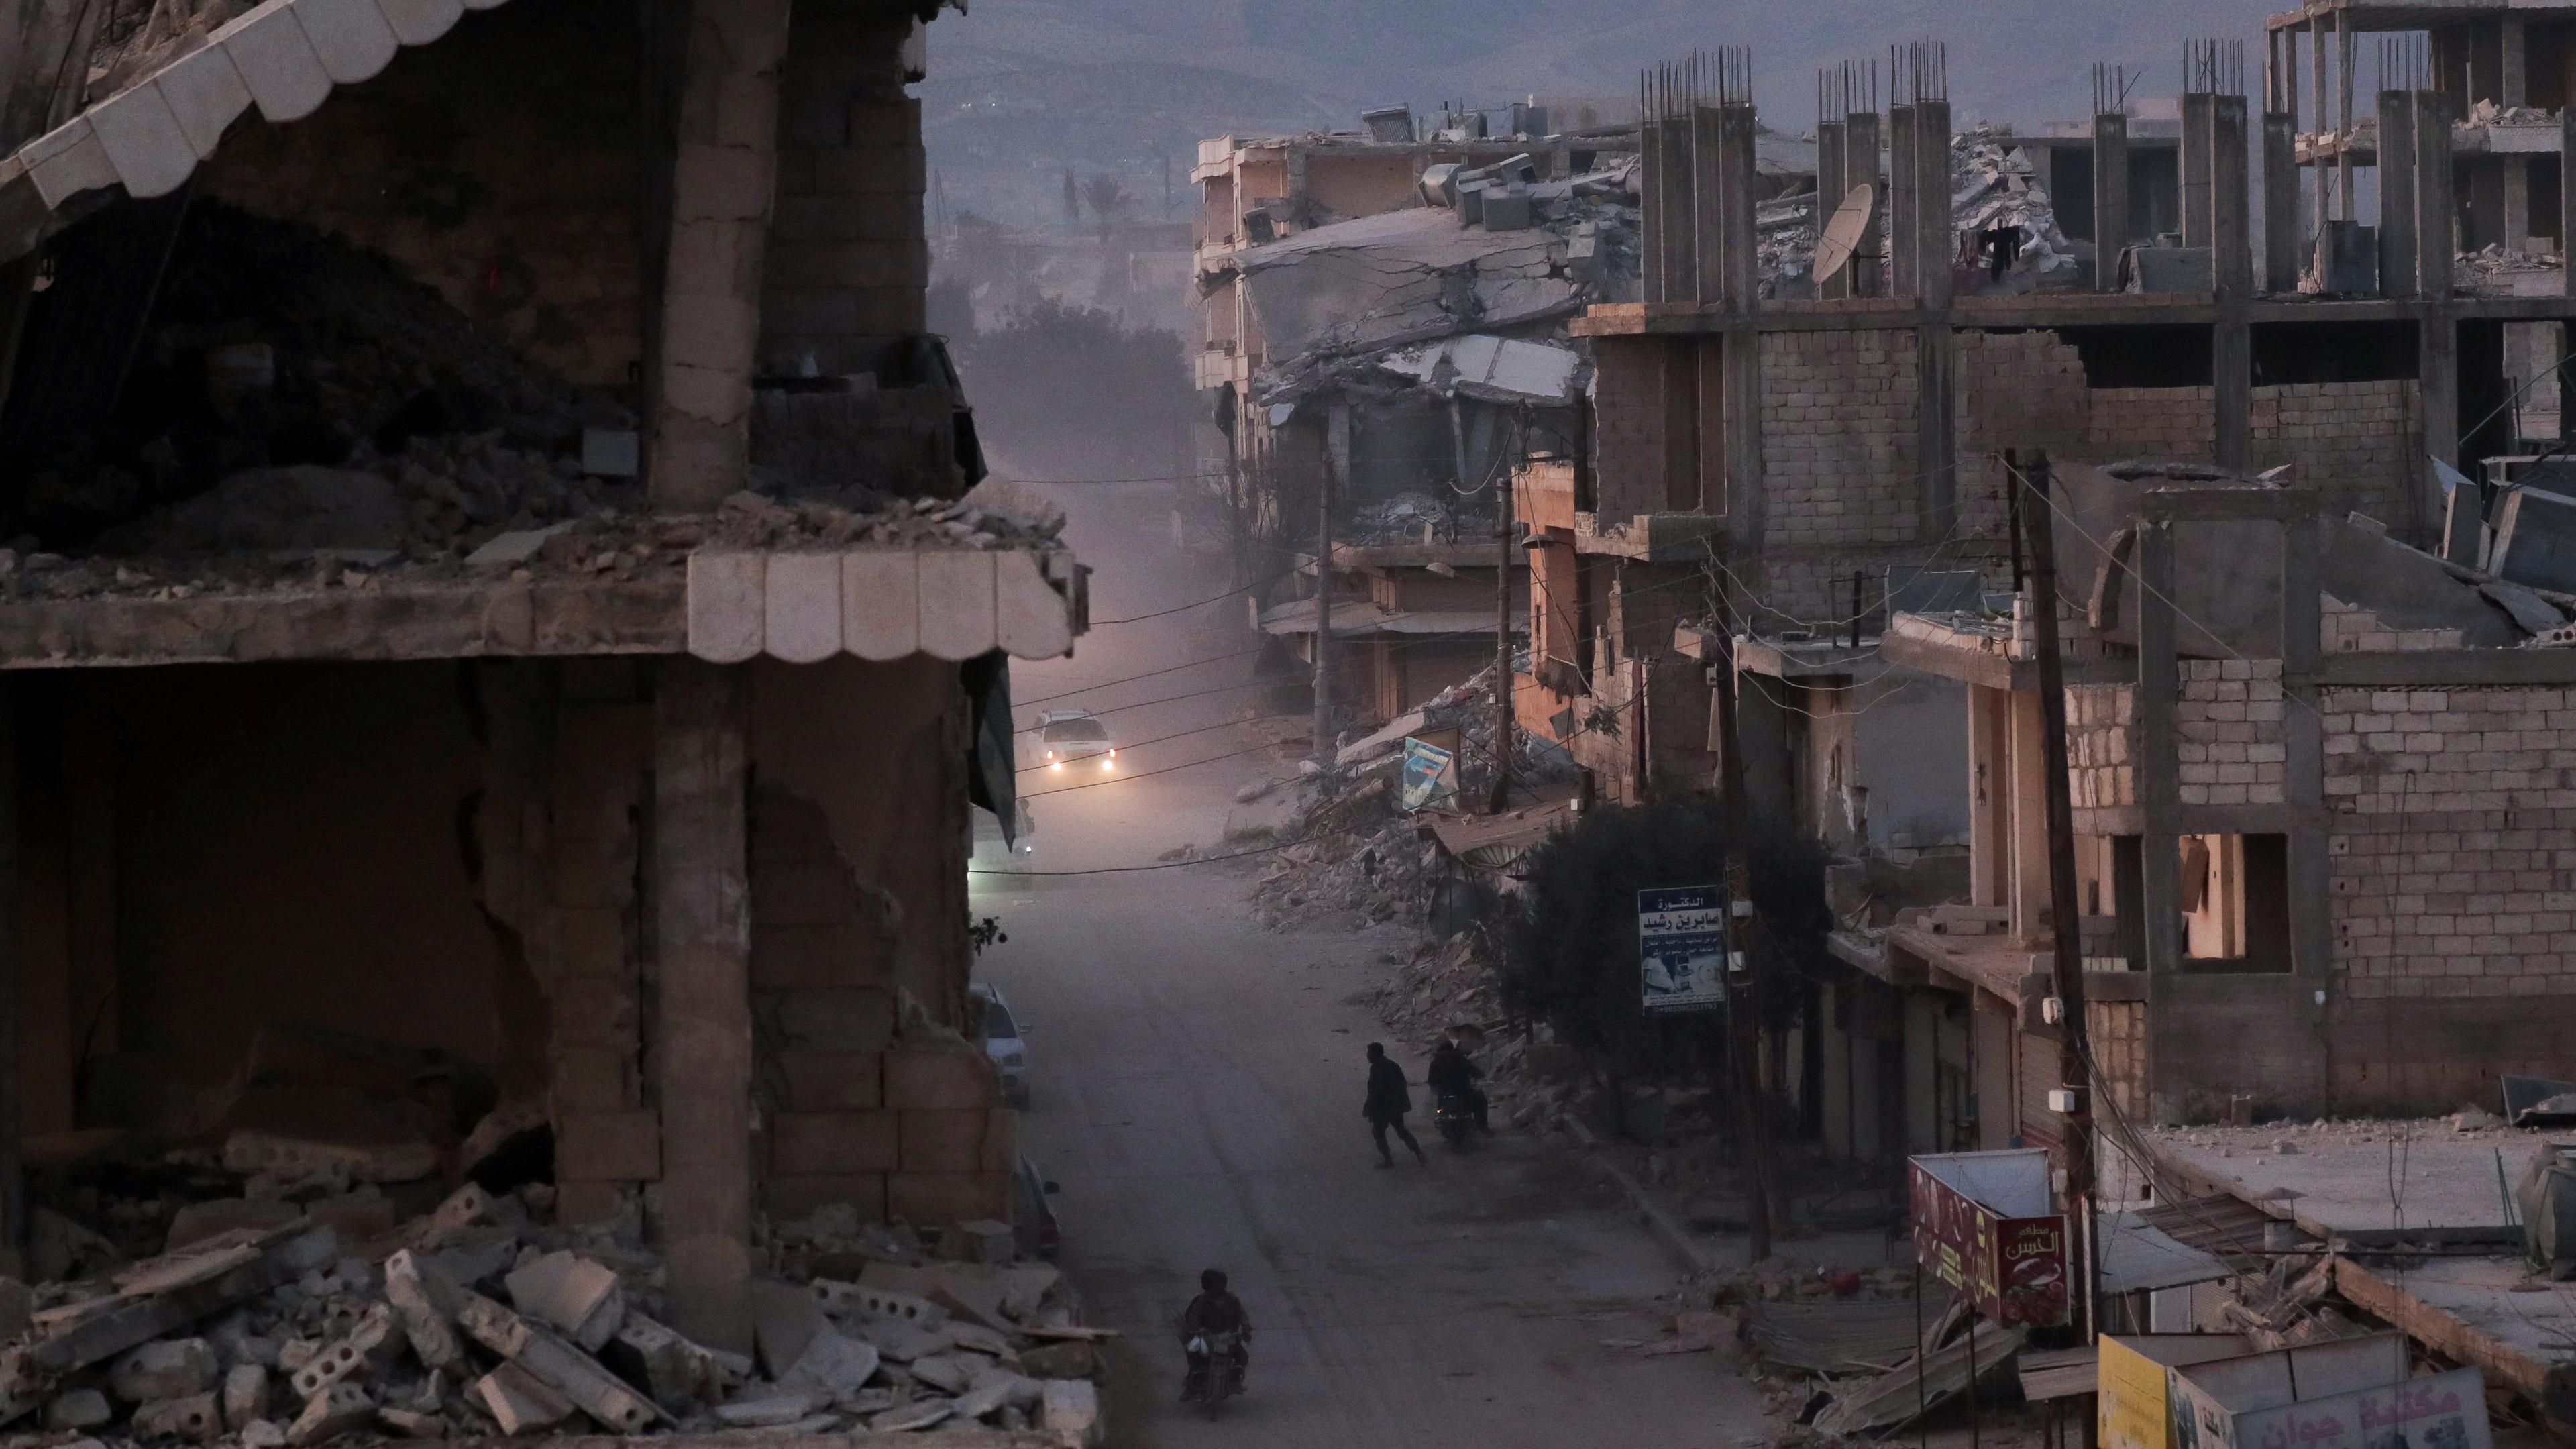 Menschen gehen nach einem Erdbeben in der Stadt Jandaris in Syrien an beschädigten Gebäuden vorbei.